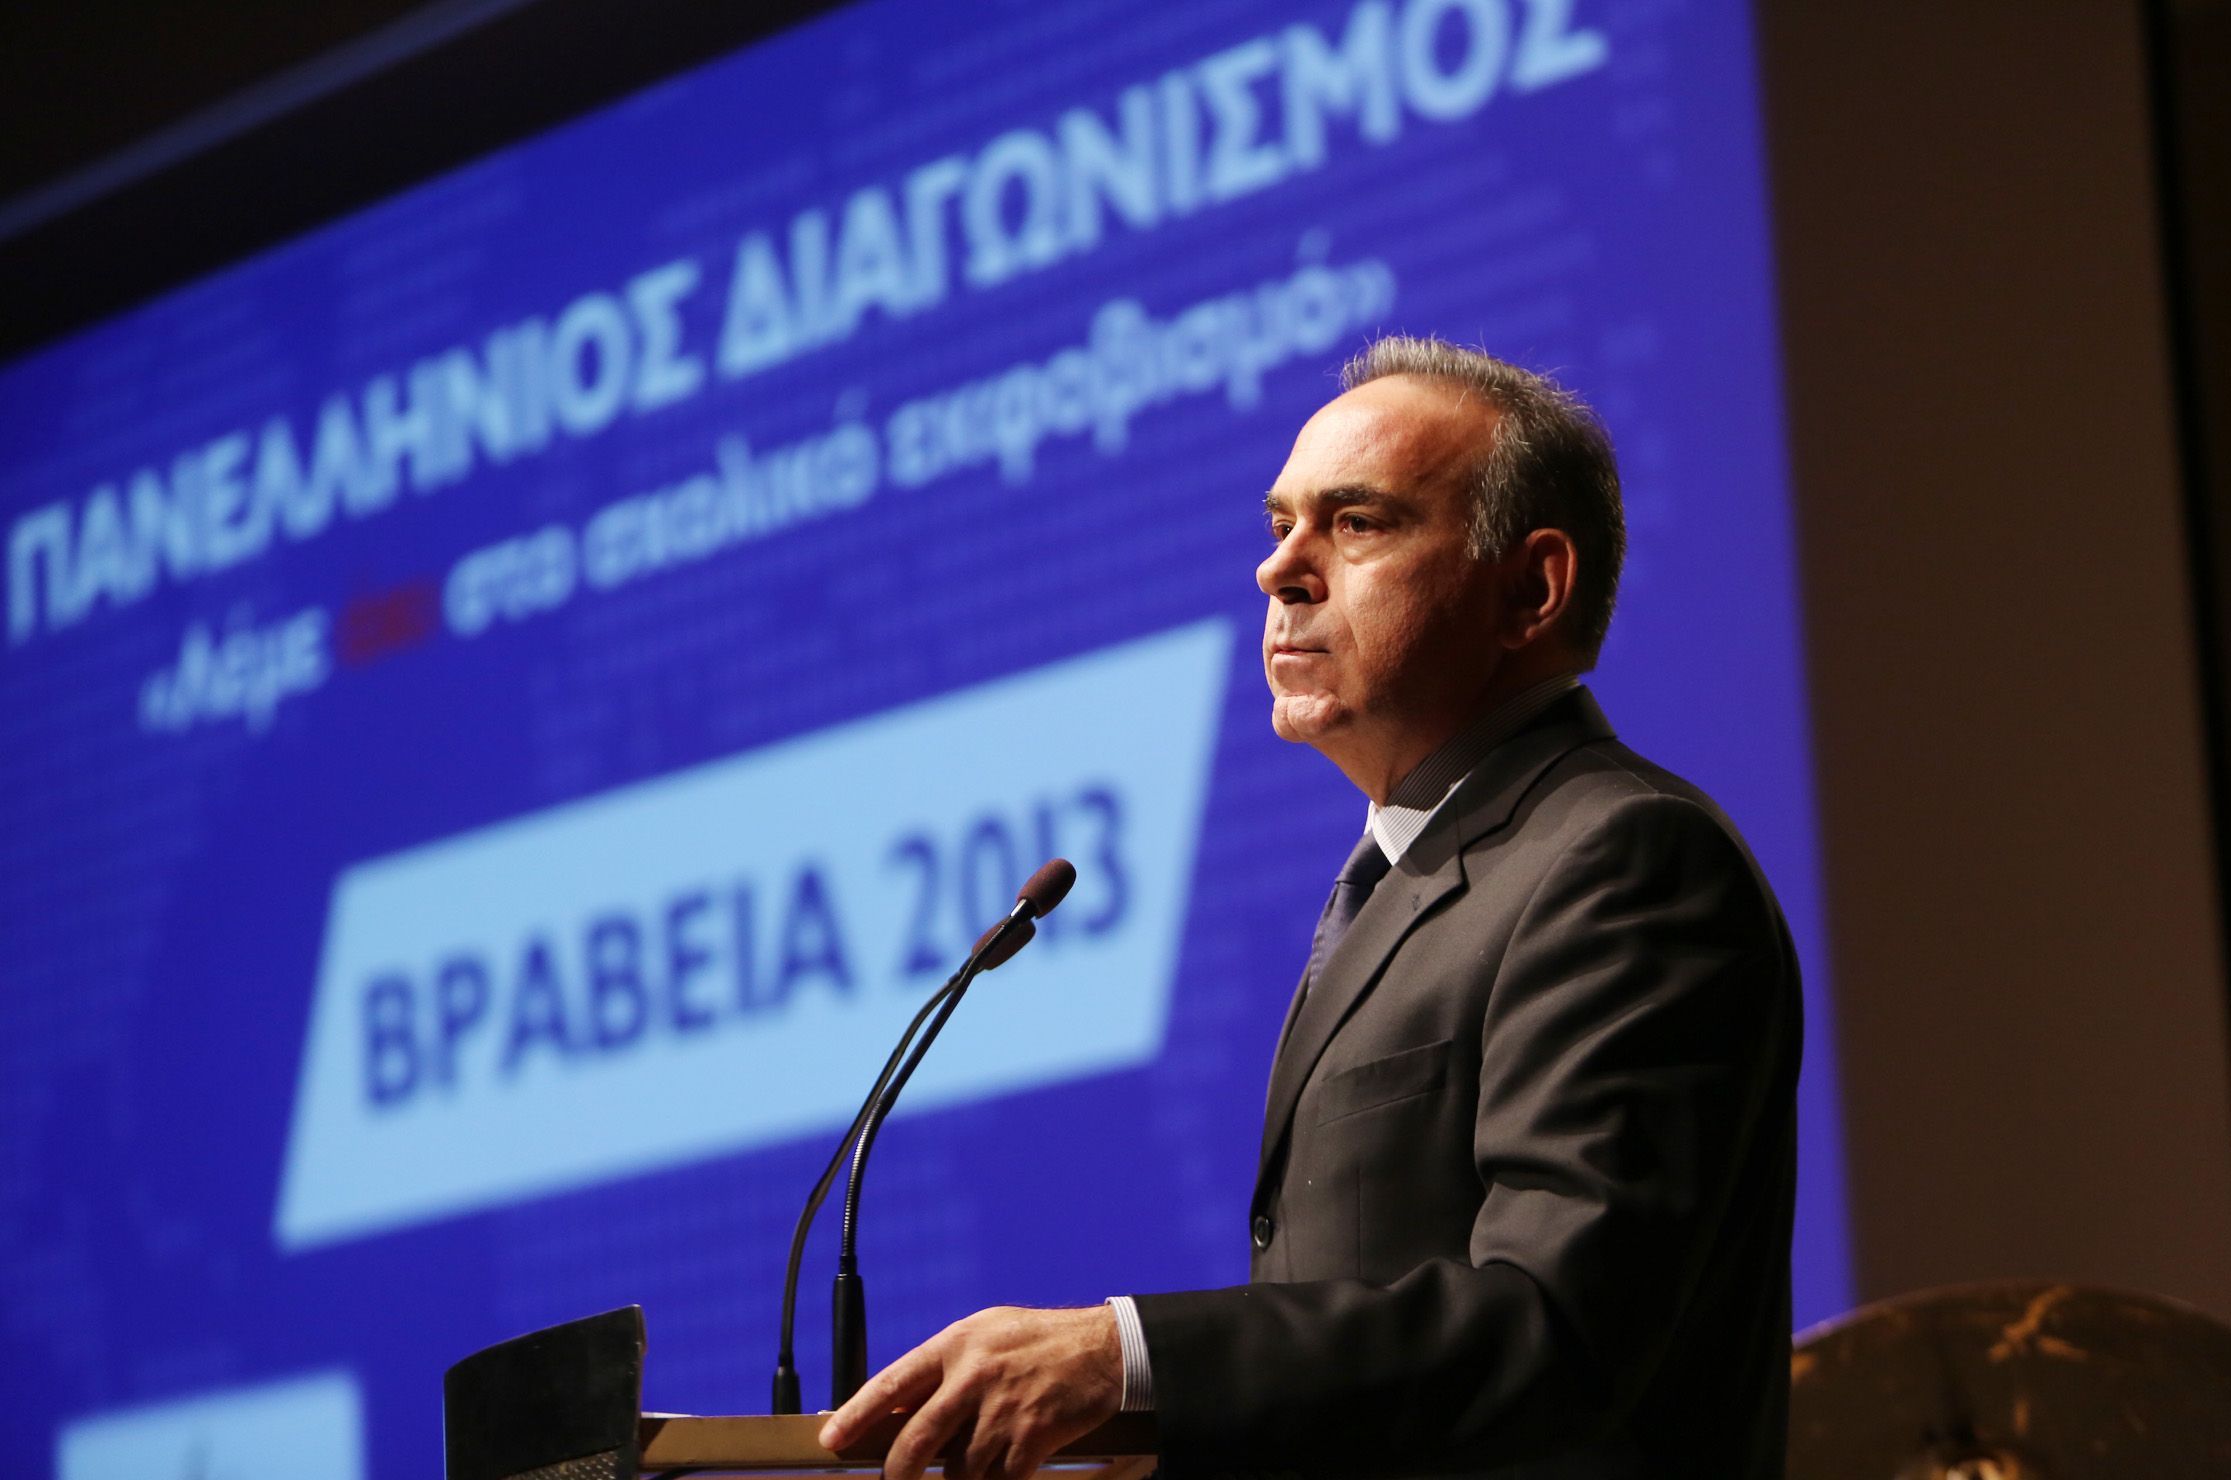 Αρβανιτόπουλος: Υπαρκτά και ανησυχητικά τα φαινόμενα σχολικού εκφοβισμού